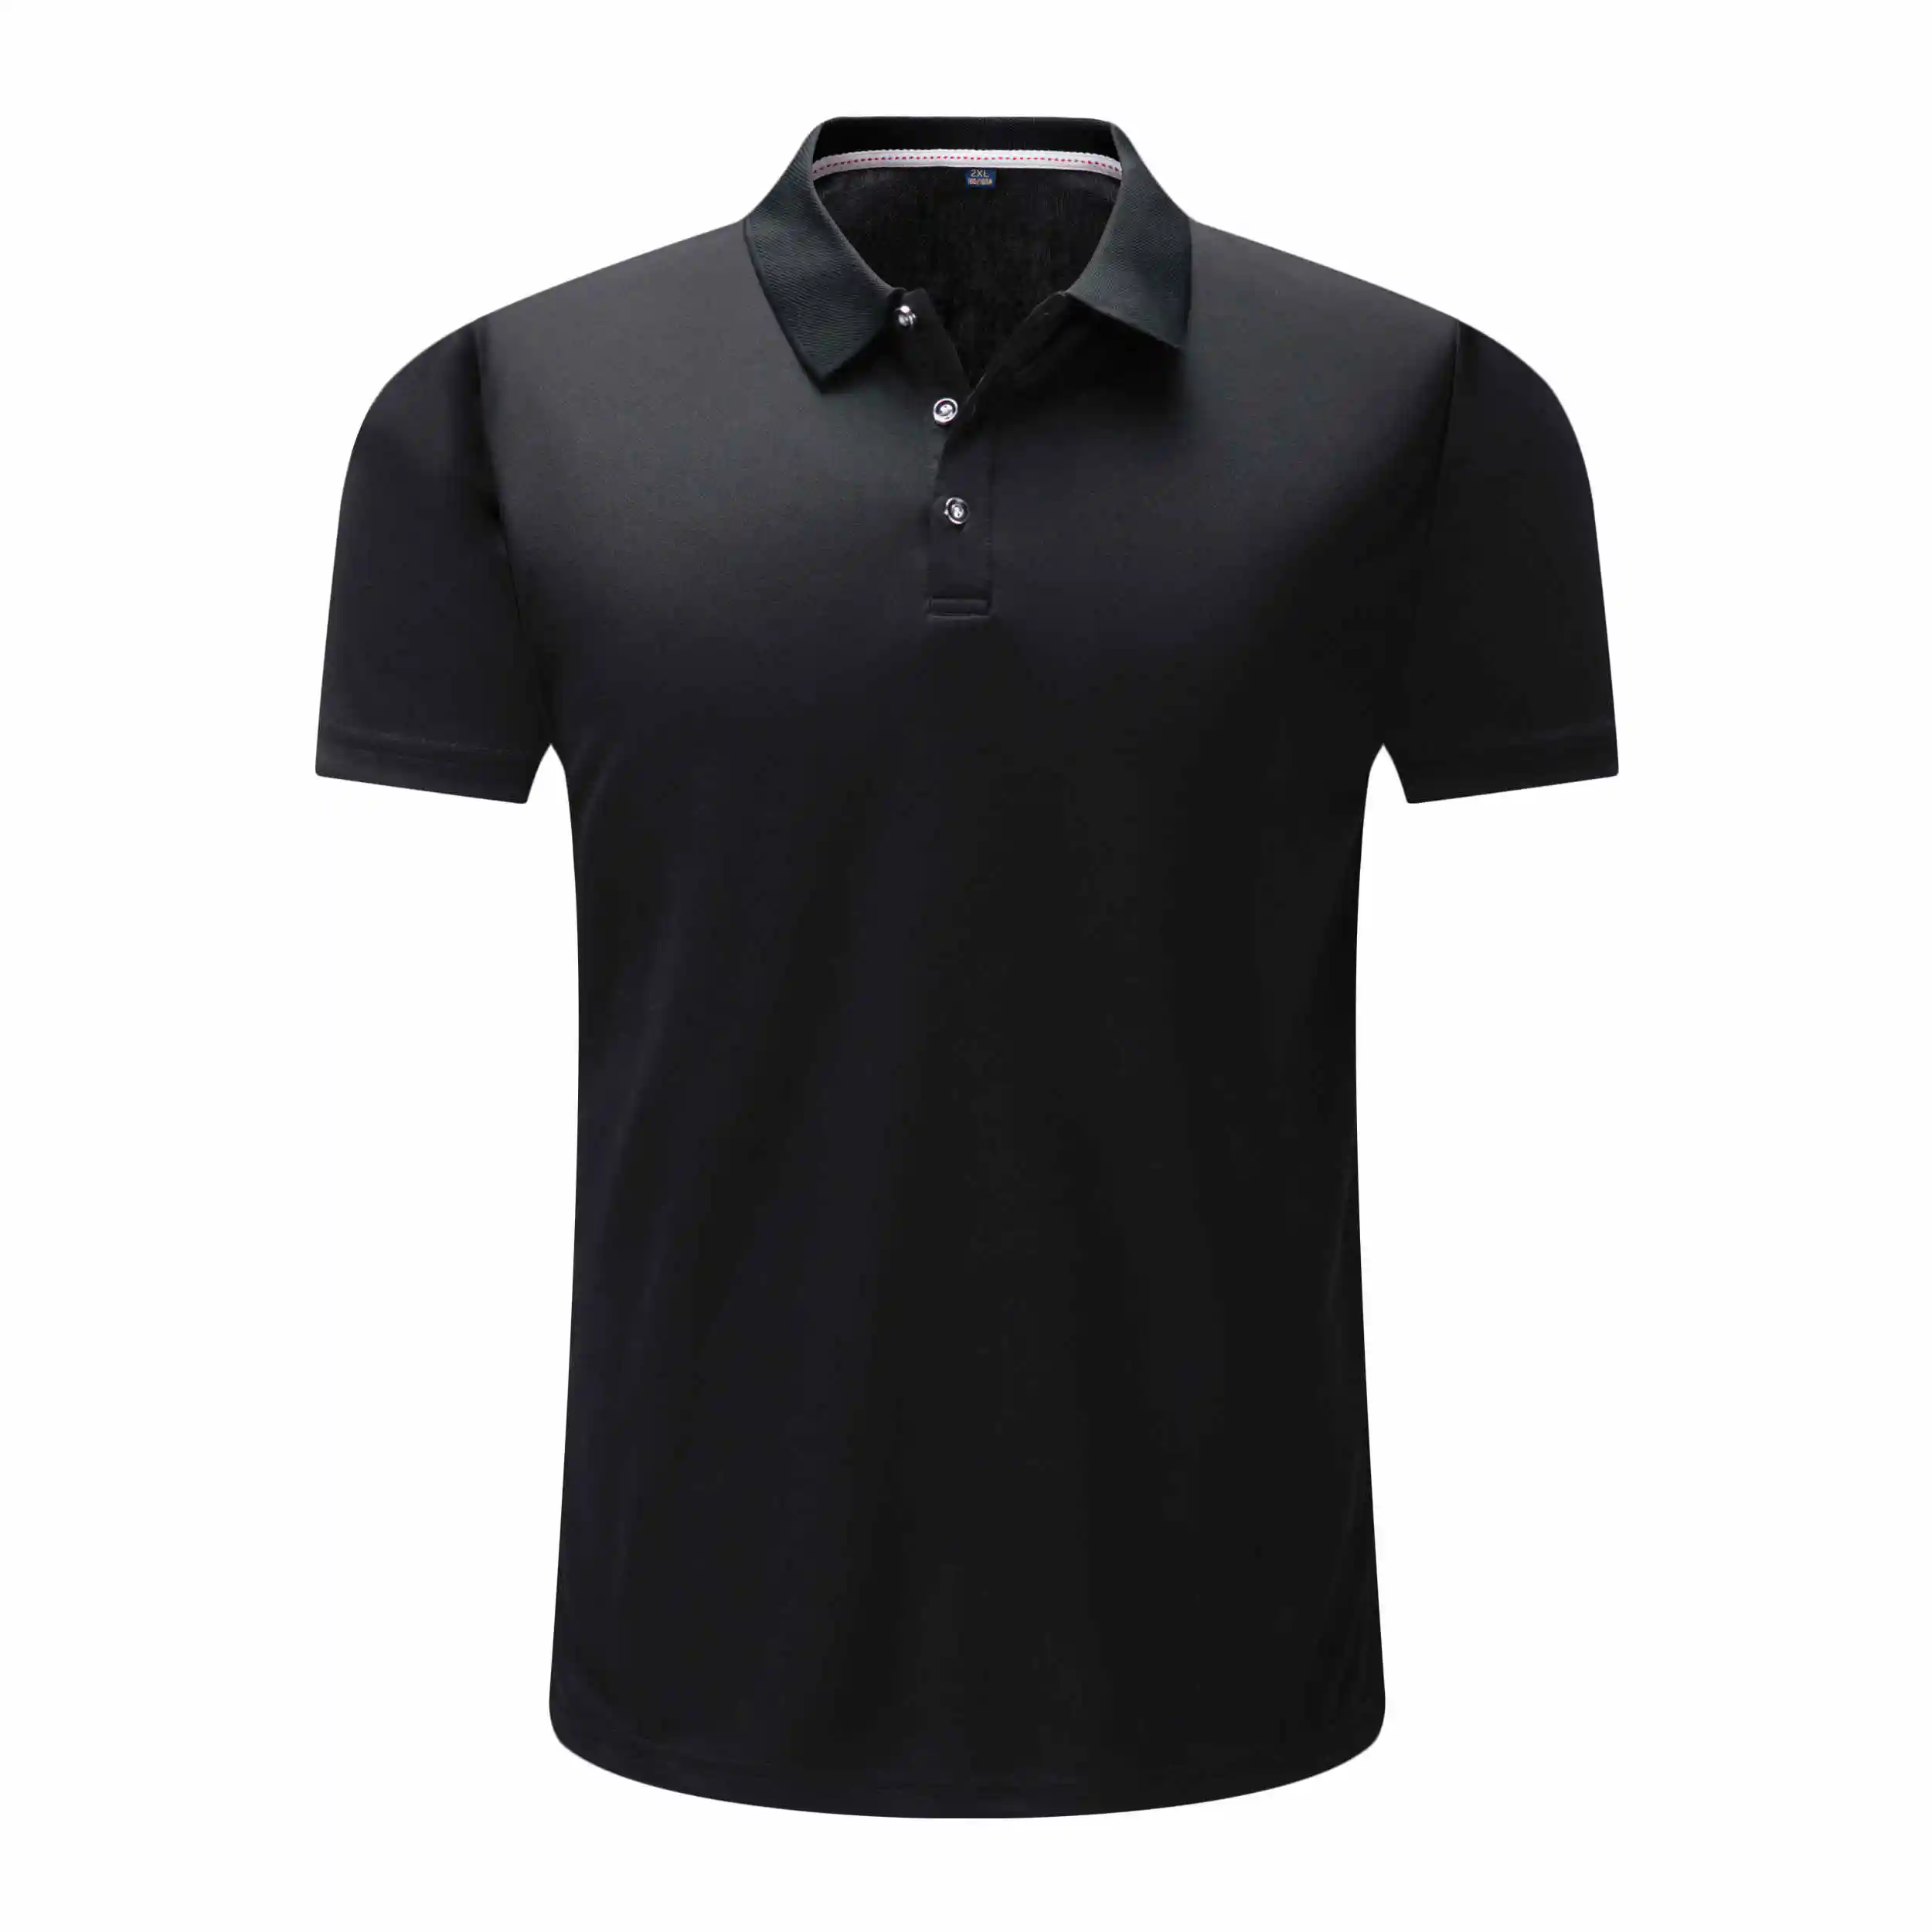 Прямая продажа с фабрики вышивка логотипа обычный golf polo футболка без рисунка для игры в гольф рубашки мужские воротник футболки с логотипом на заказ